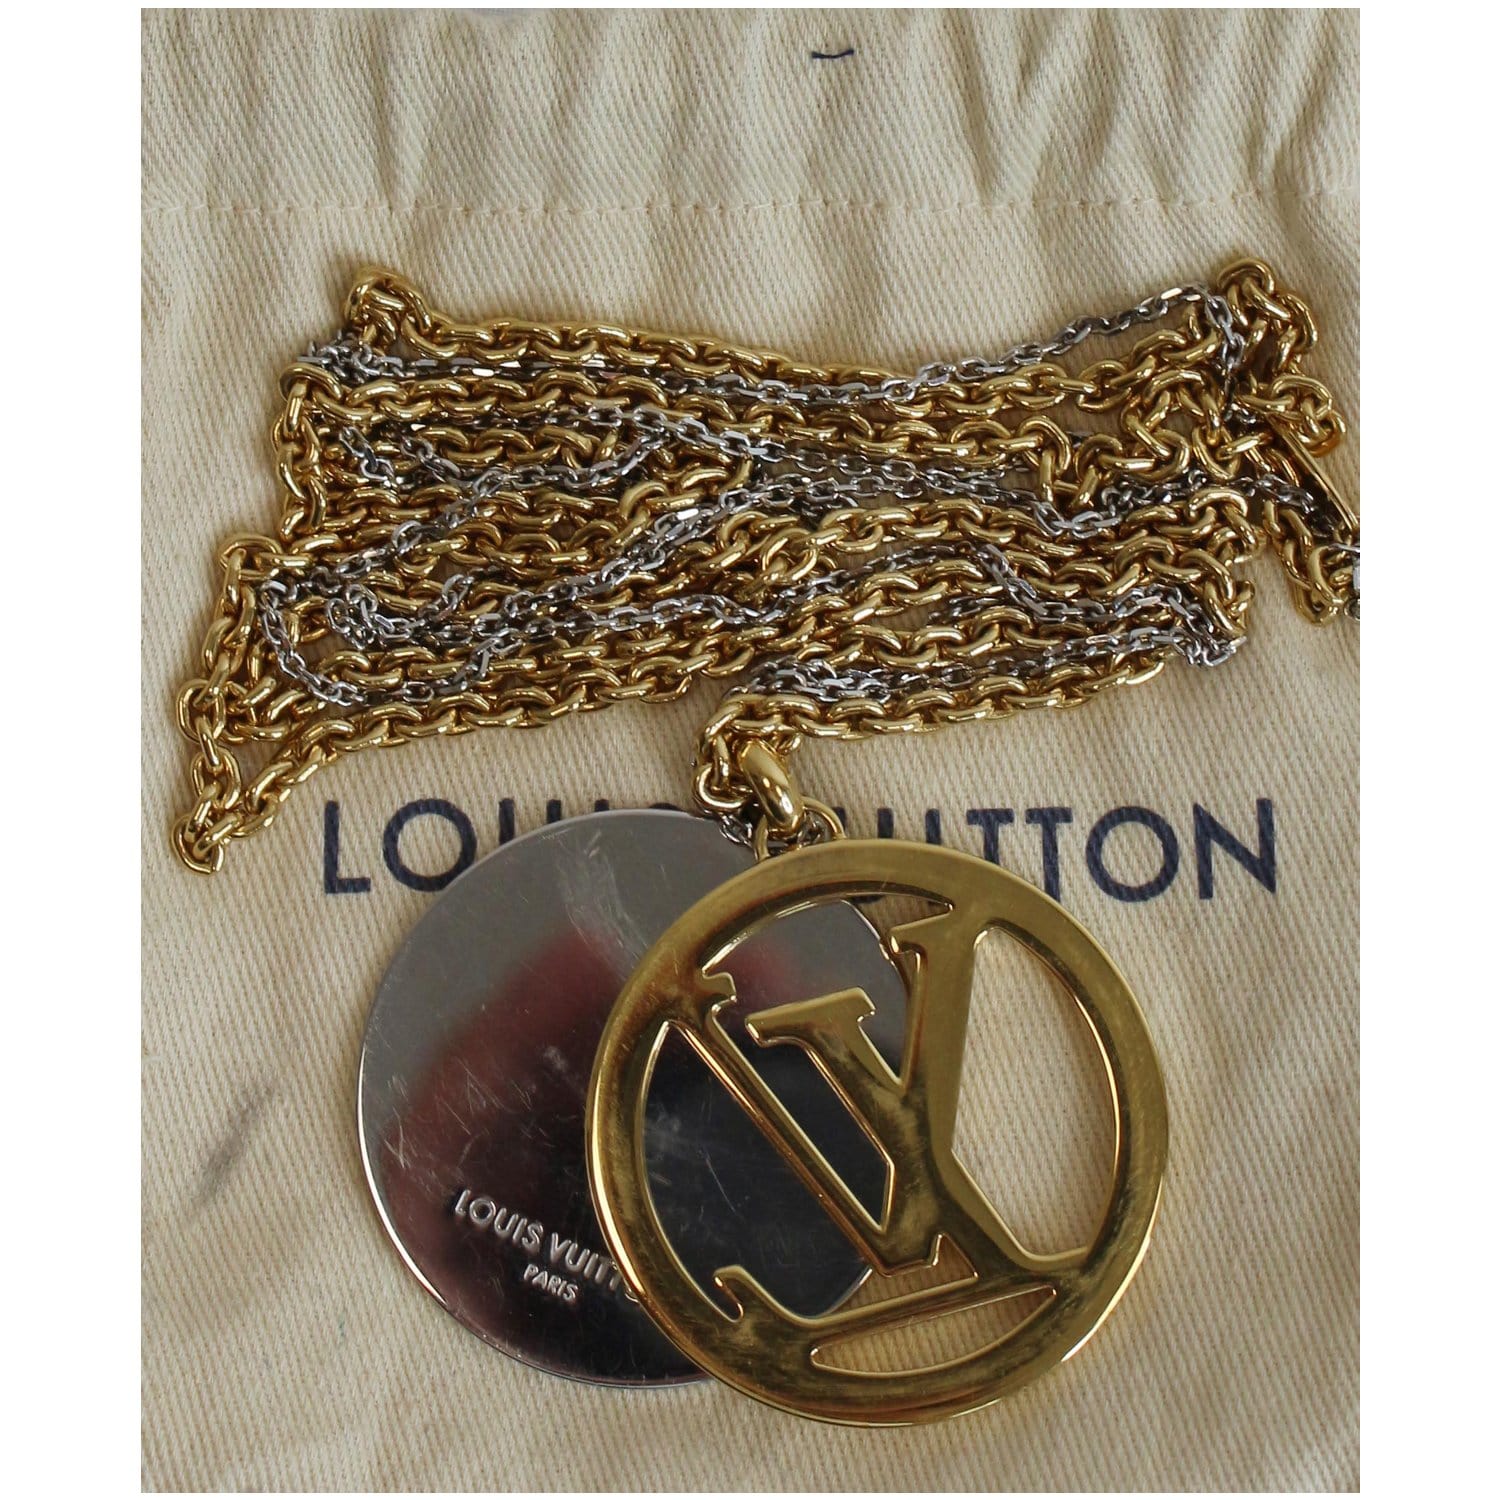 Louis Vuitton Louisette Necklace Gold Brass